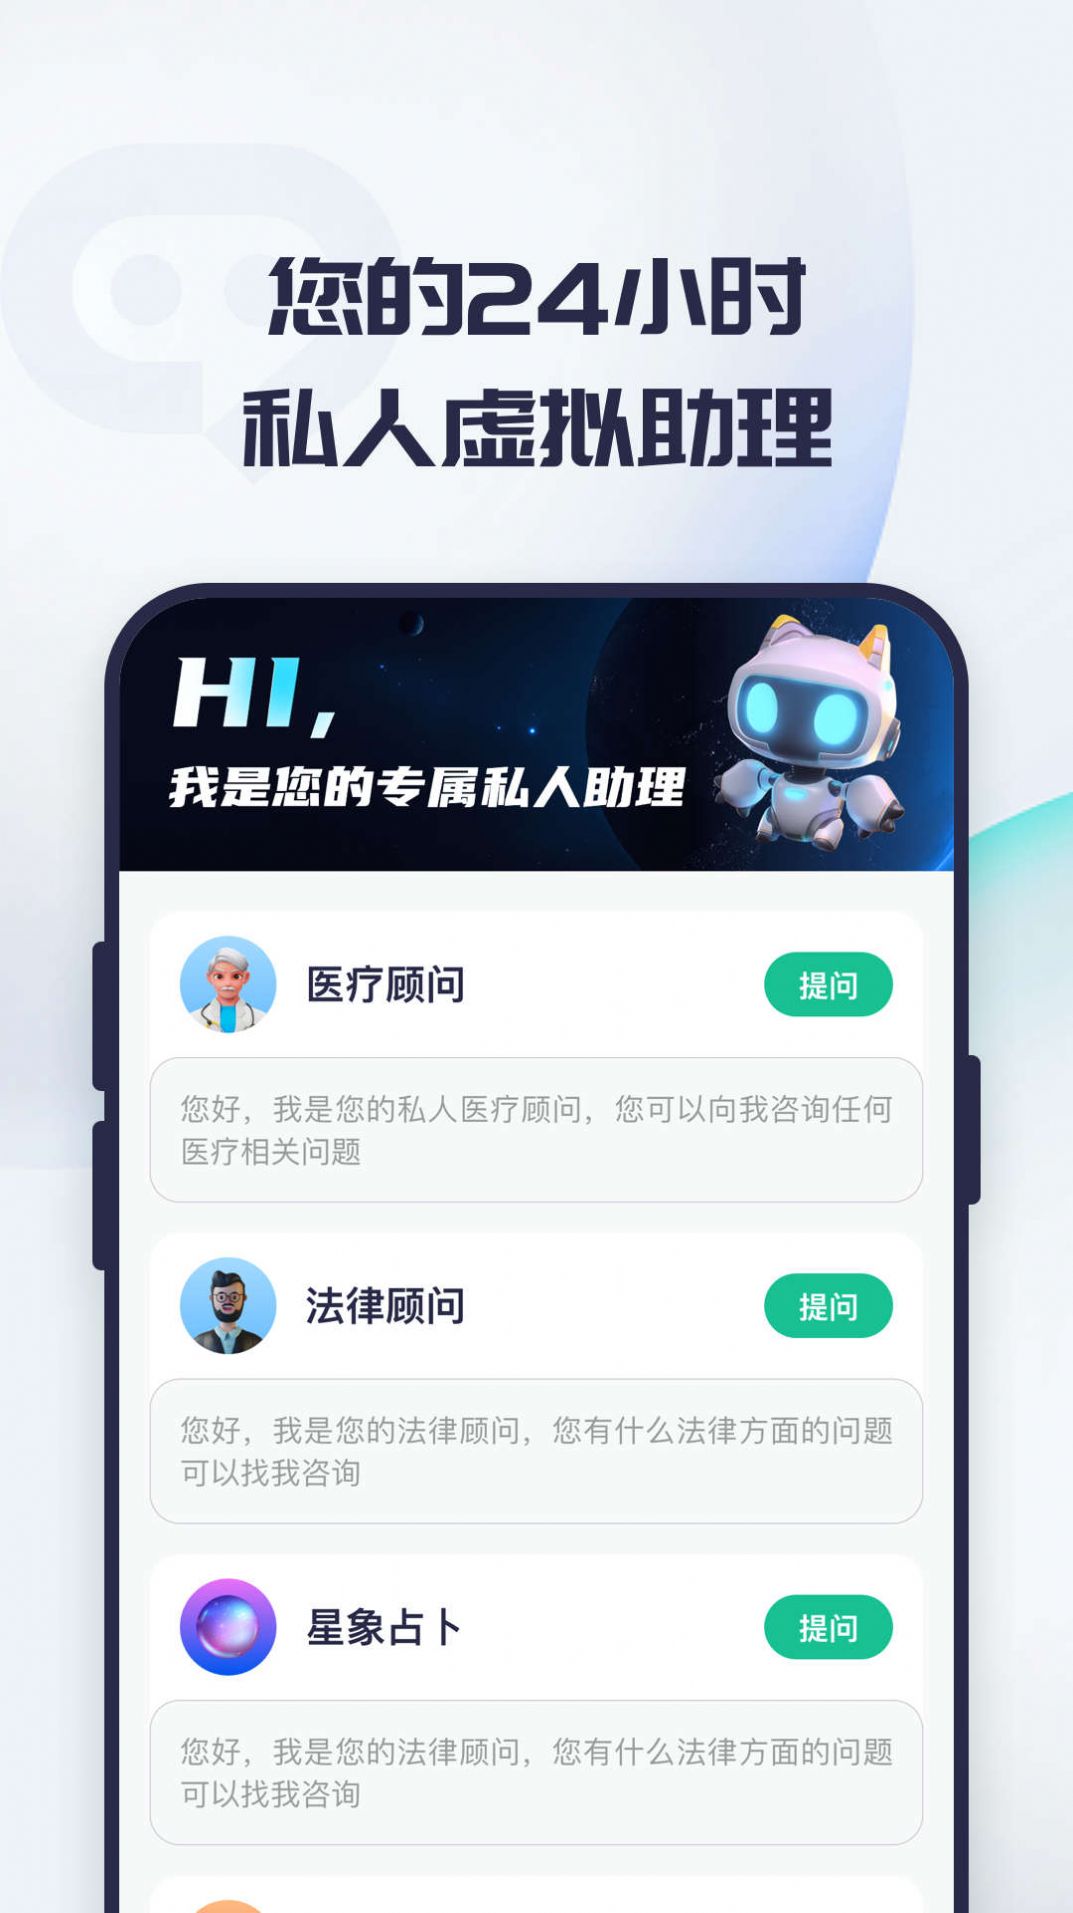 ChatGPT 终极指南 | AI中文｜AI工具集导航｜AI工具导航大全｜收录好用的AI工具